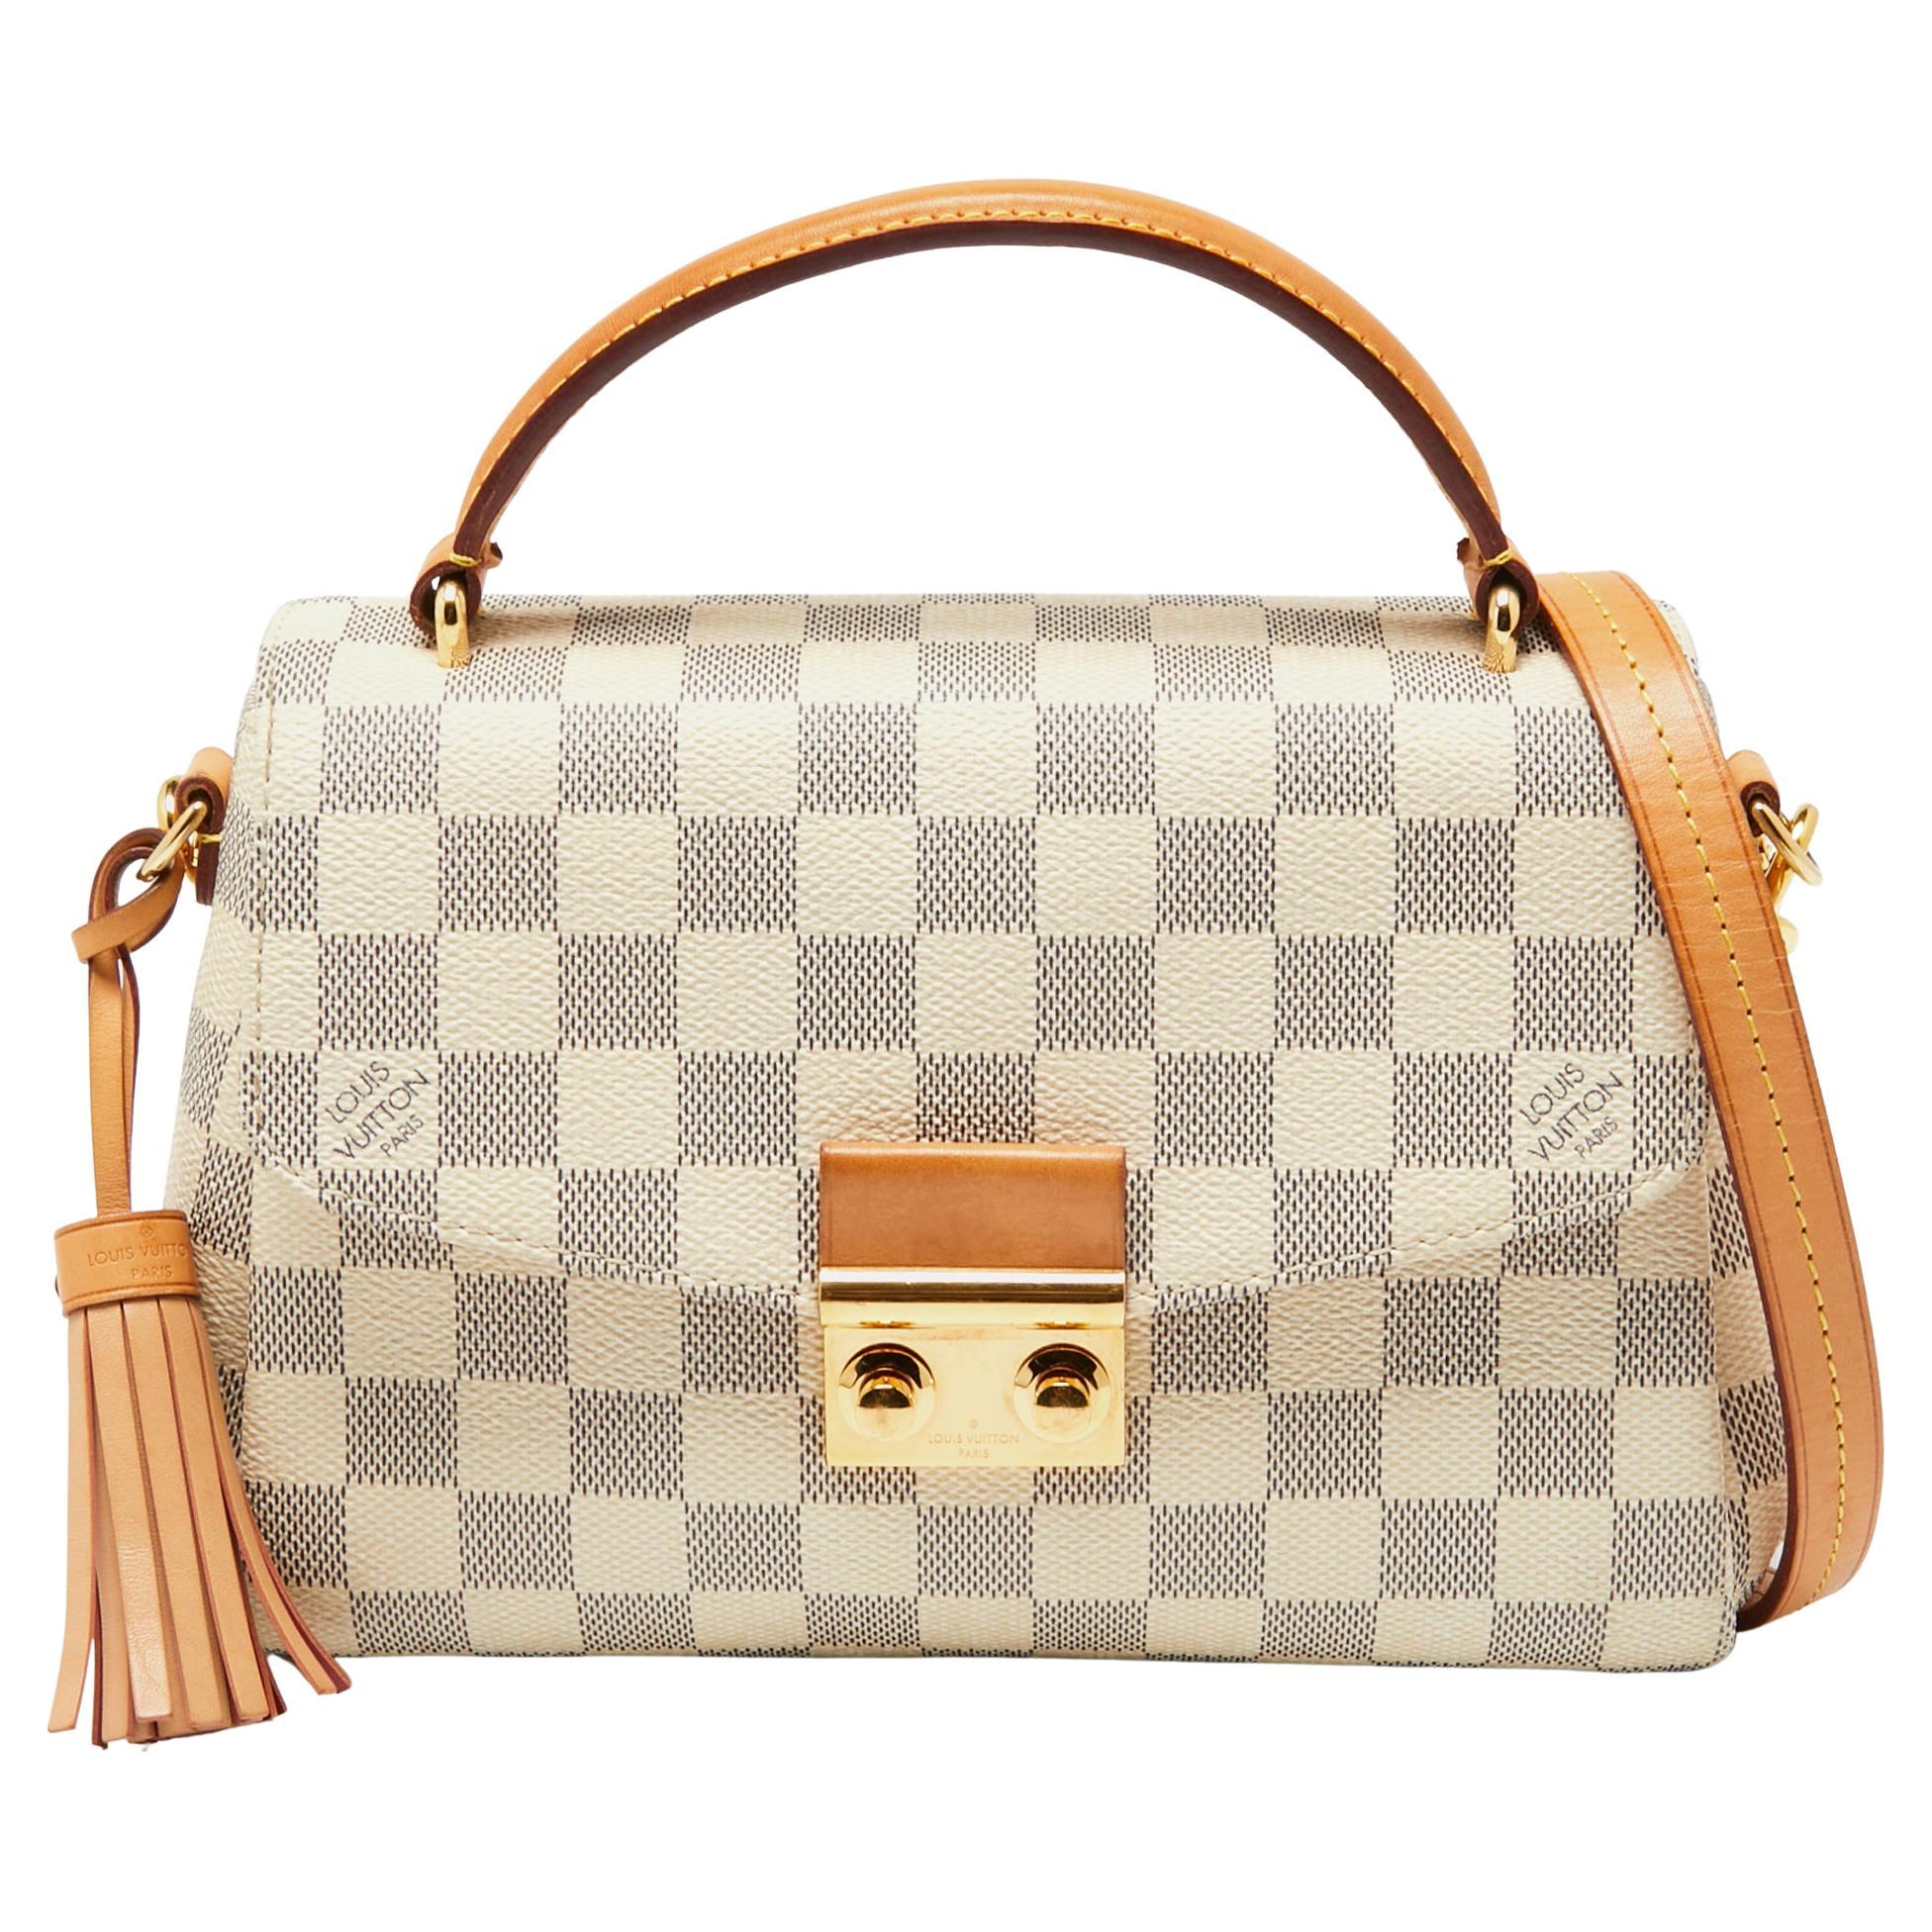 Louis Vuitton - Authenticated Croisette Handbag - Cotton White for Women, Good Condition